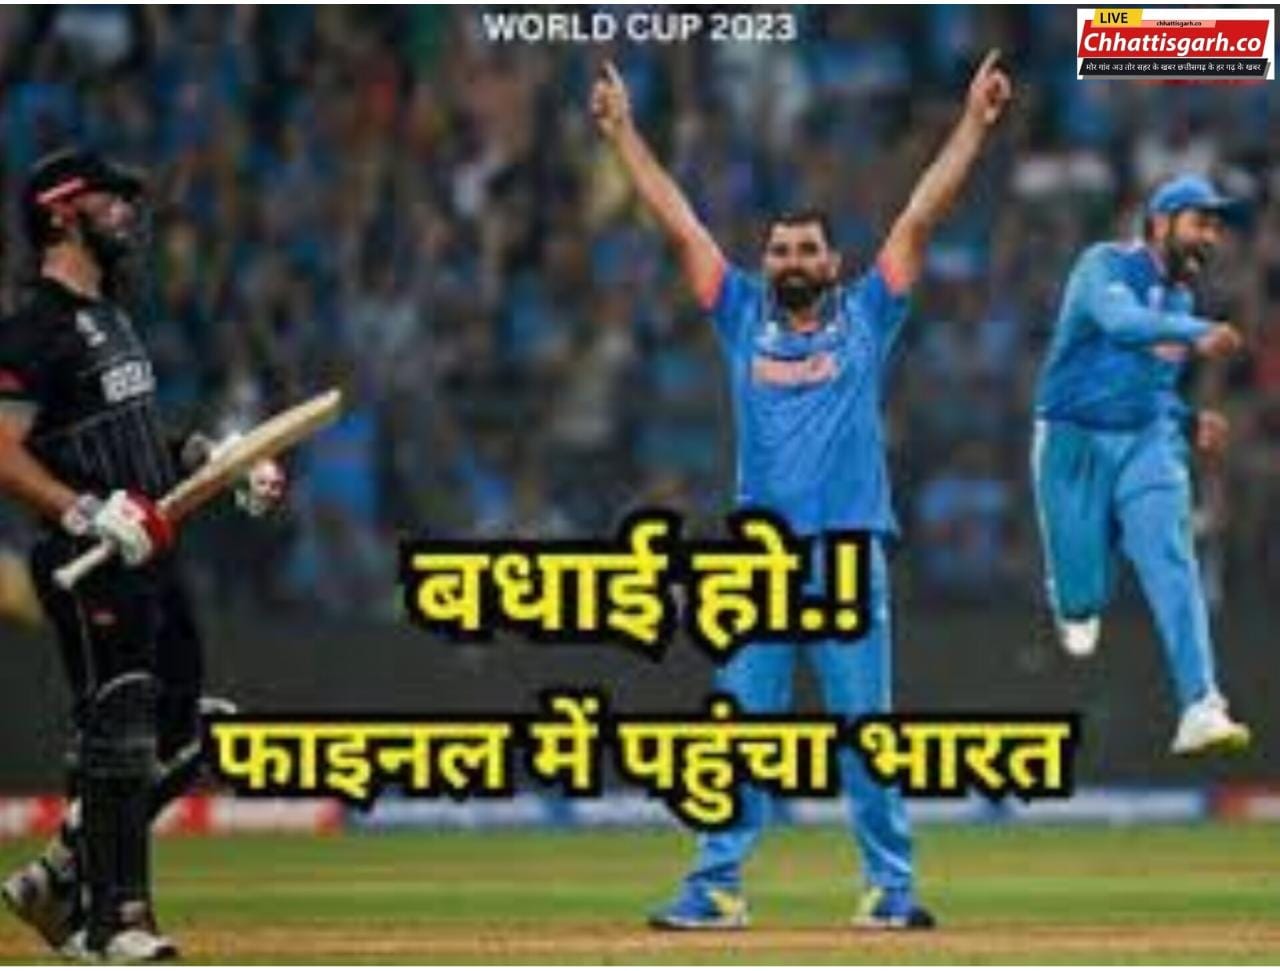 वनडे वर्ल्ड कप 2023  : भारत की लगातार 10वीं जीत, सेमीफाइनल में कीवी टीम को 70 रनों से हराया